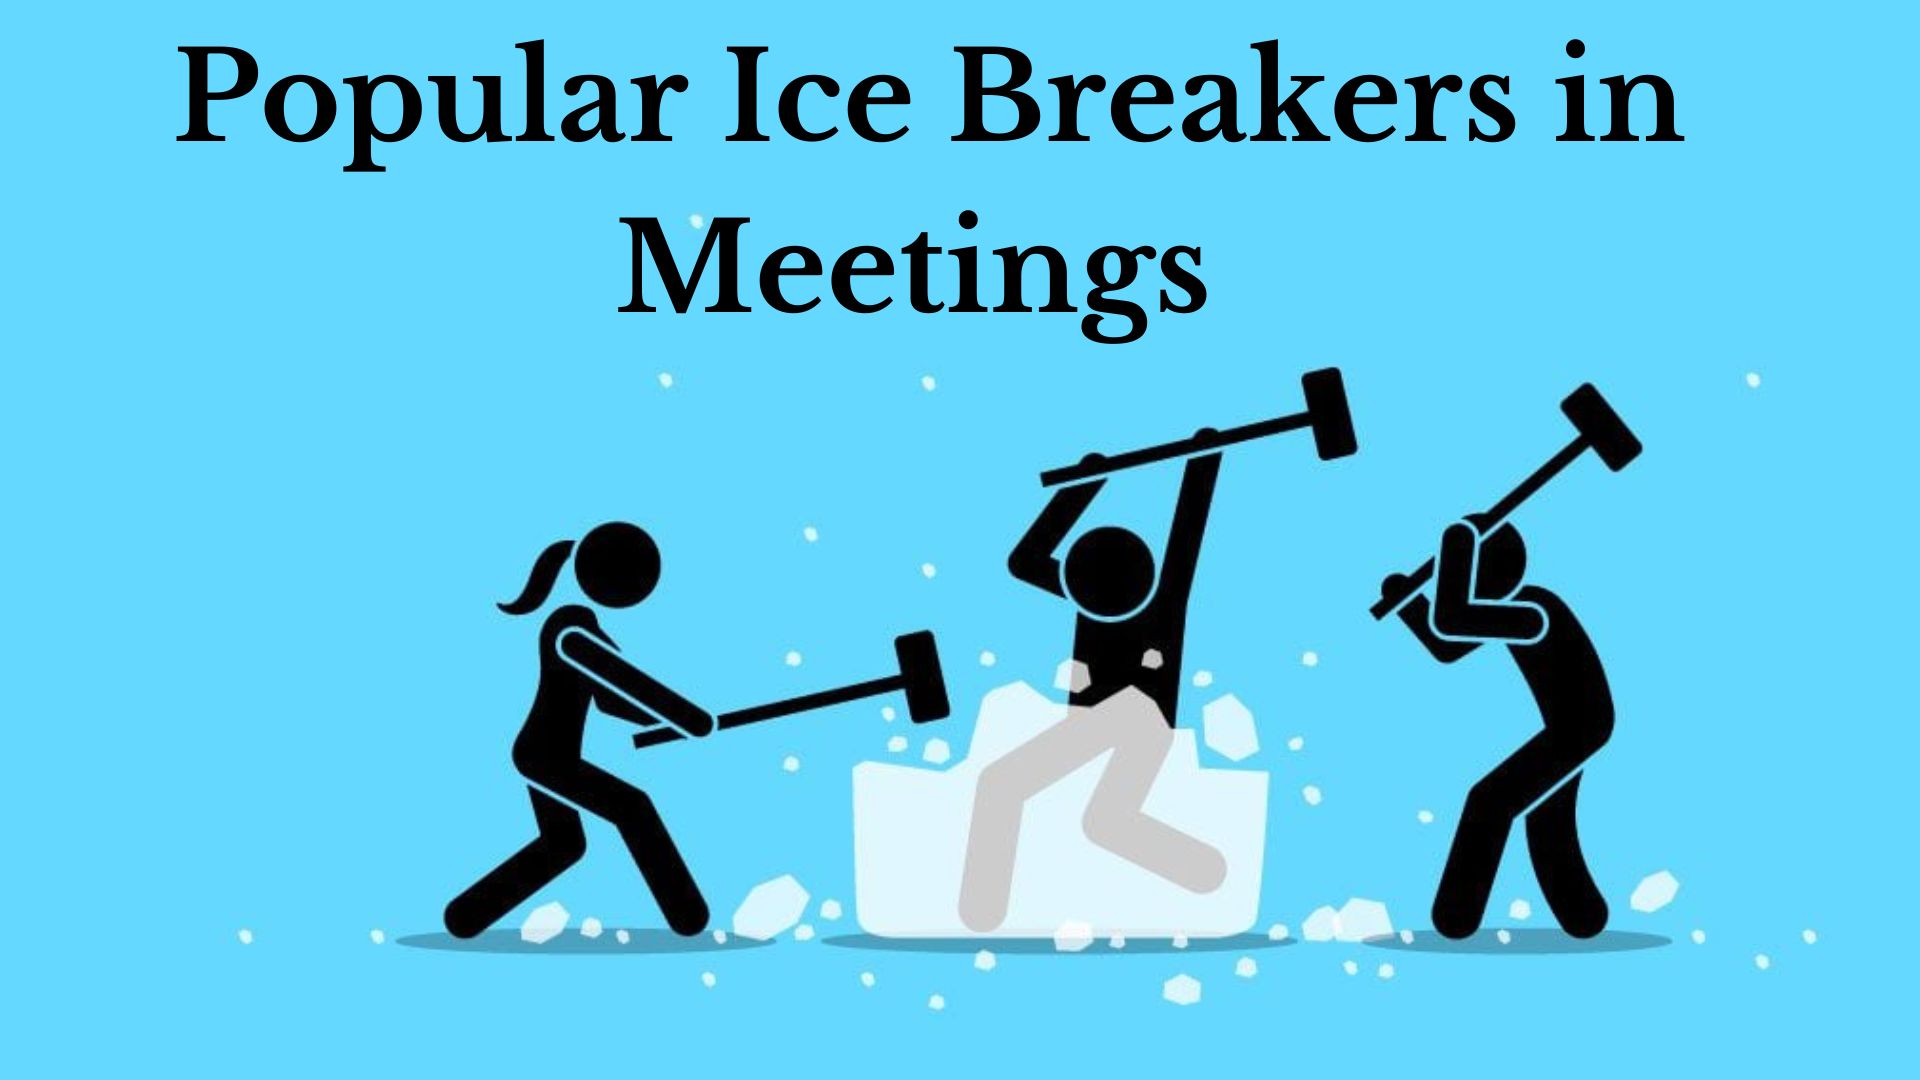 Ice Breakers in Meetings